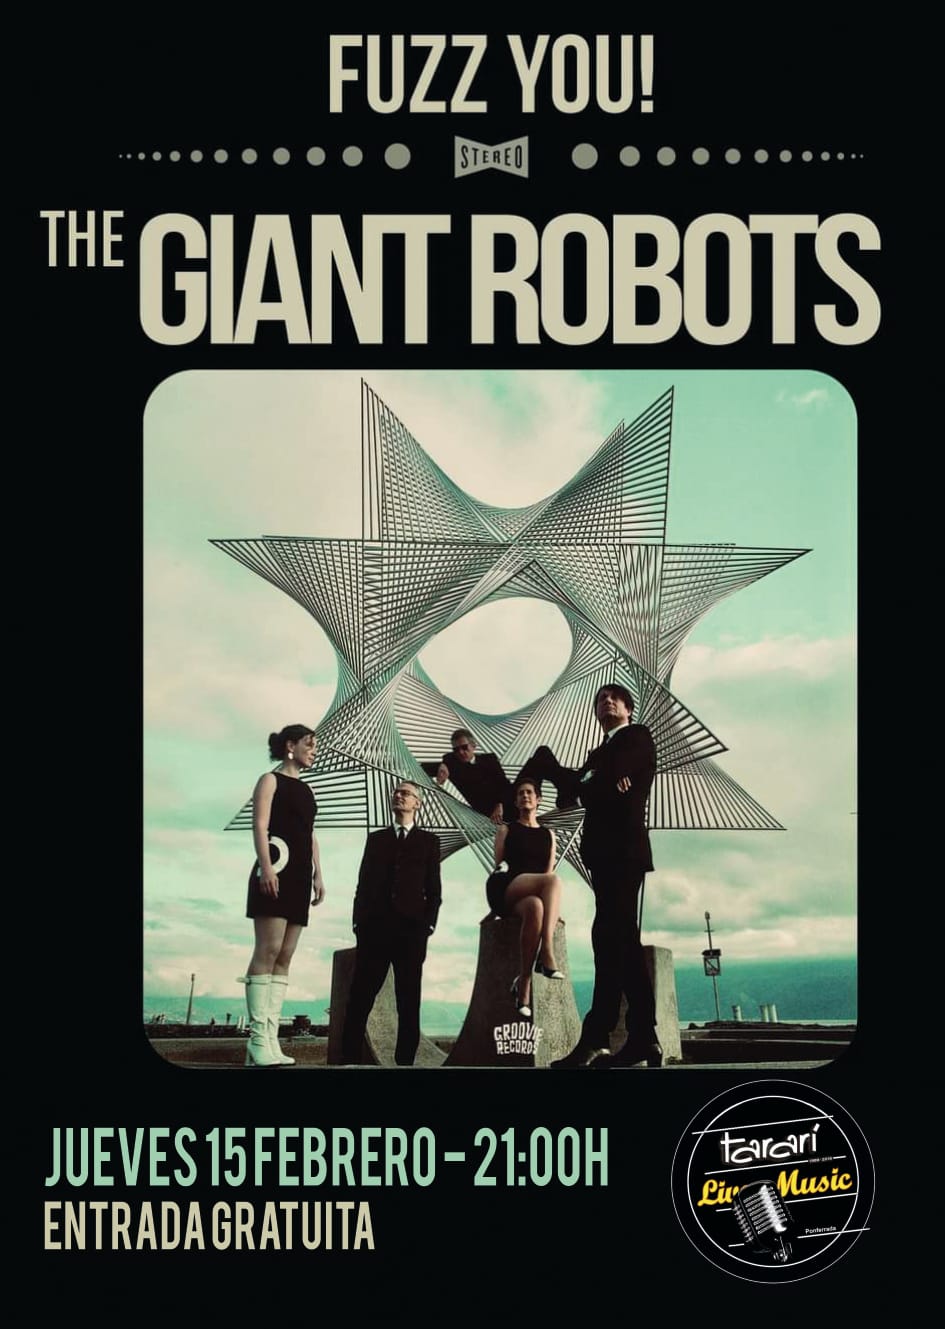 La banda suiza The Giant Robots trae a El Tararí, el mejor Rock & Roll con esencias de los sesenta 1